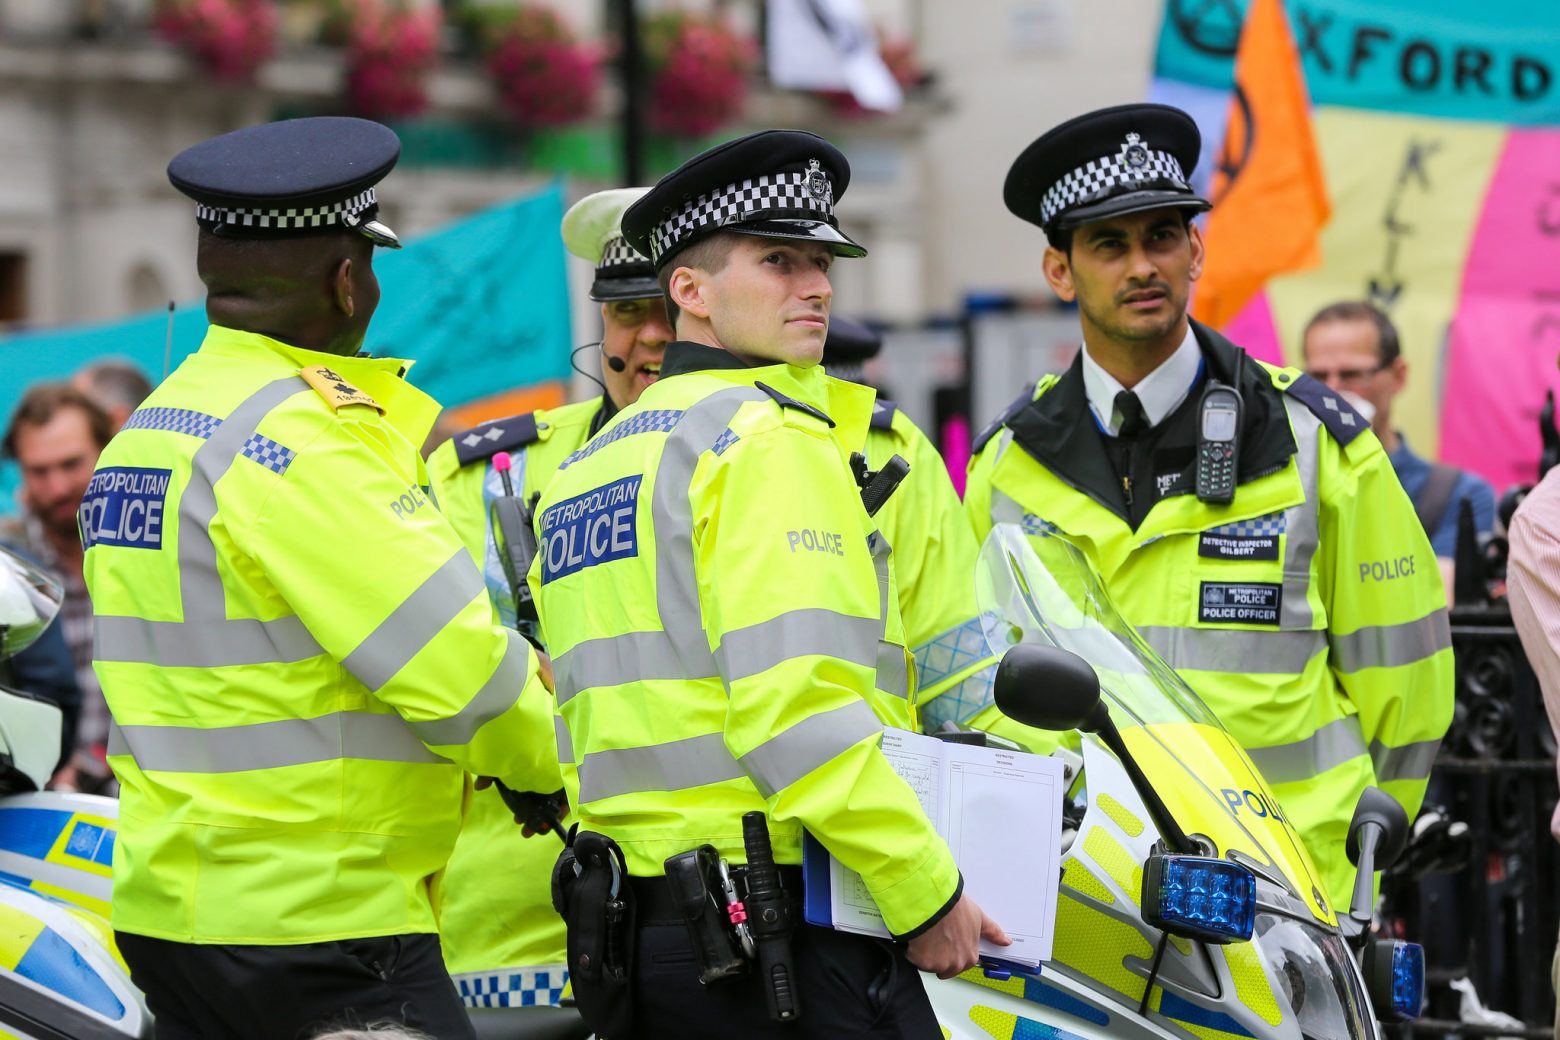 Βρετανία: Σύλληψη άνδρα που φέρεται να τοποθέτησε βελόνες σε τρόφιμα τριών σούπερ μάρκετ